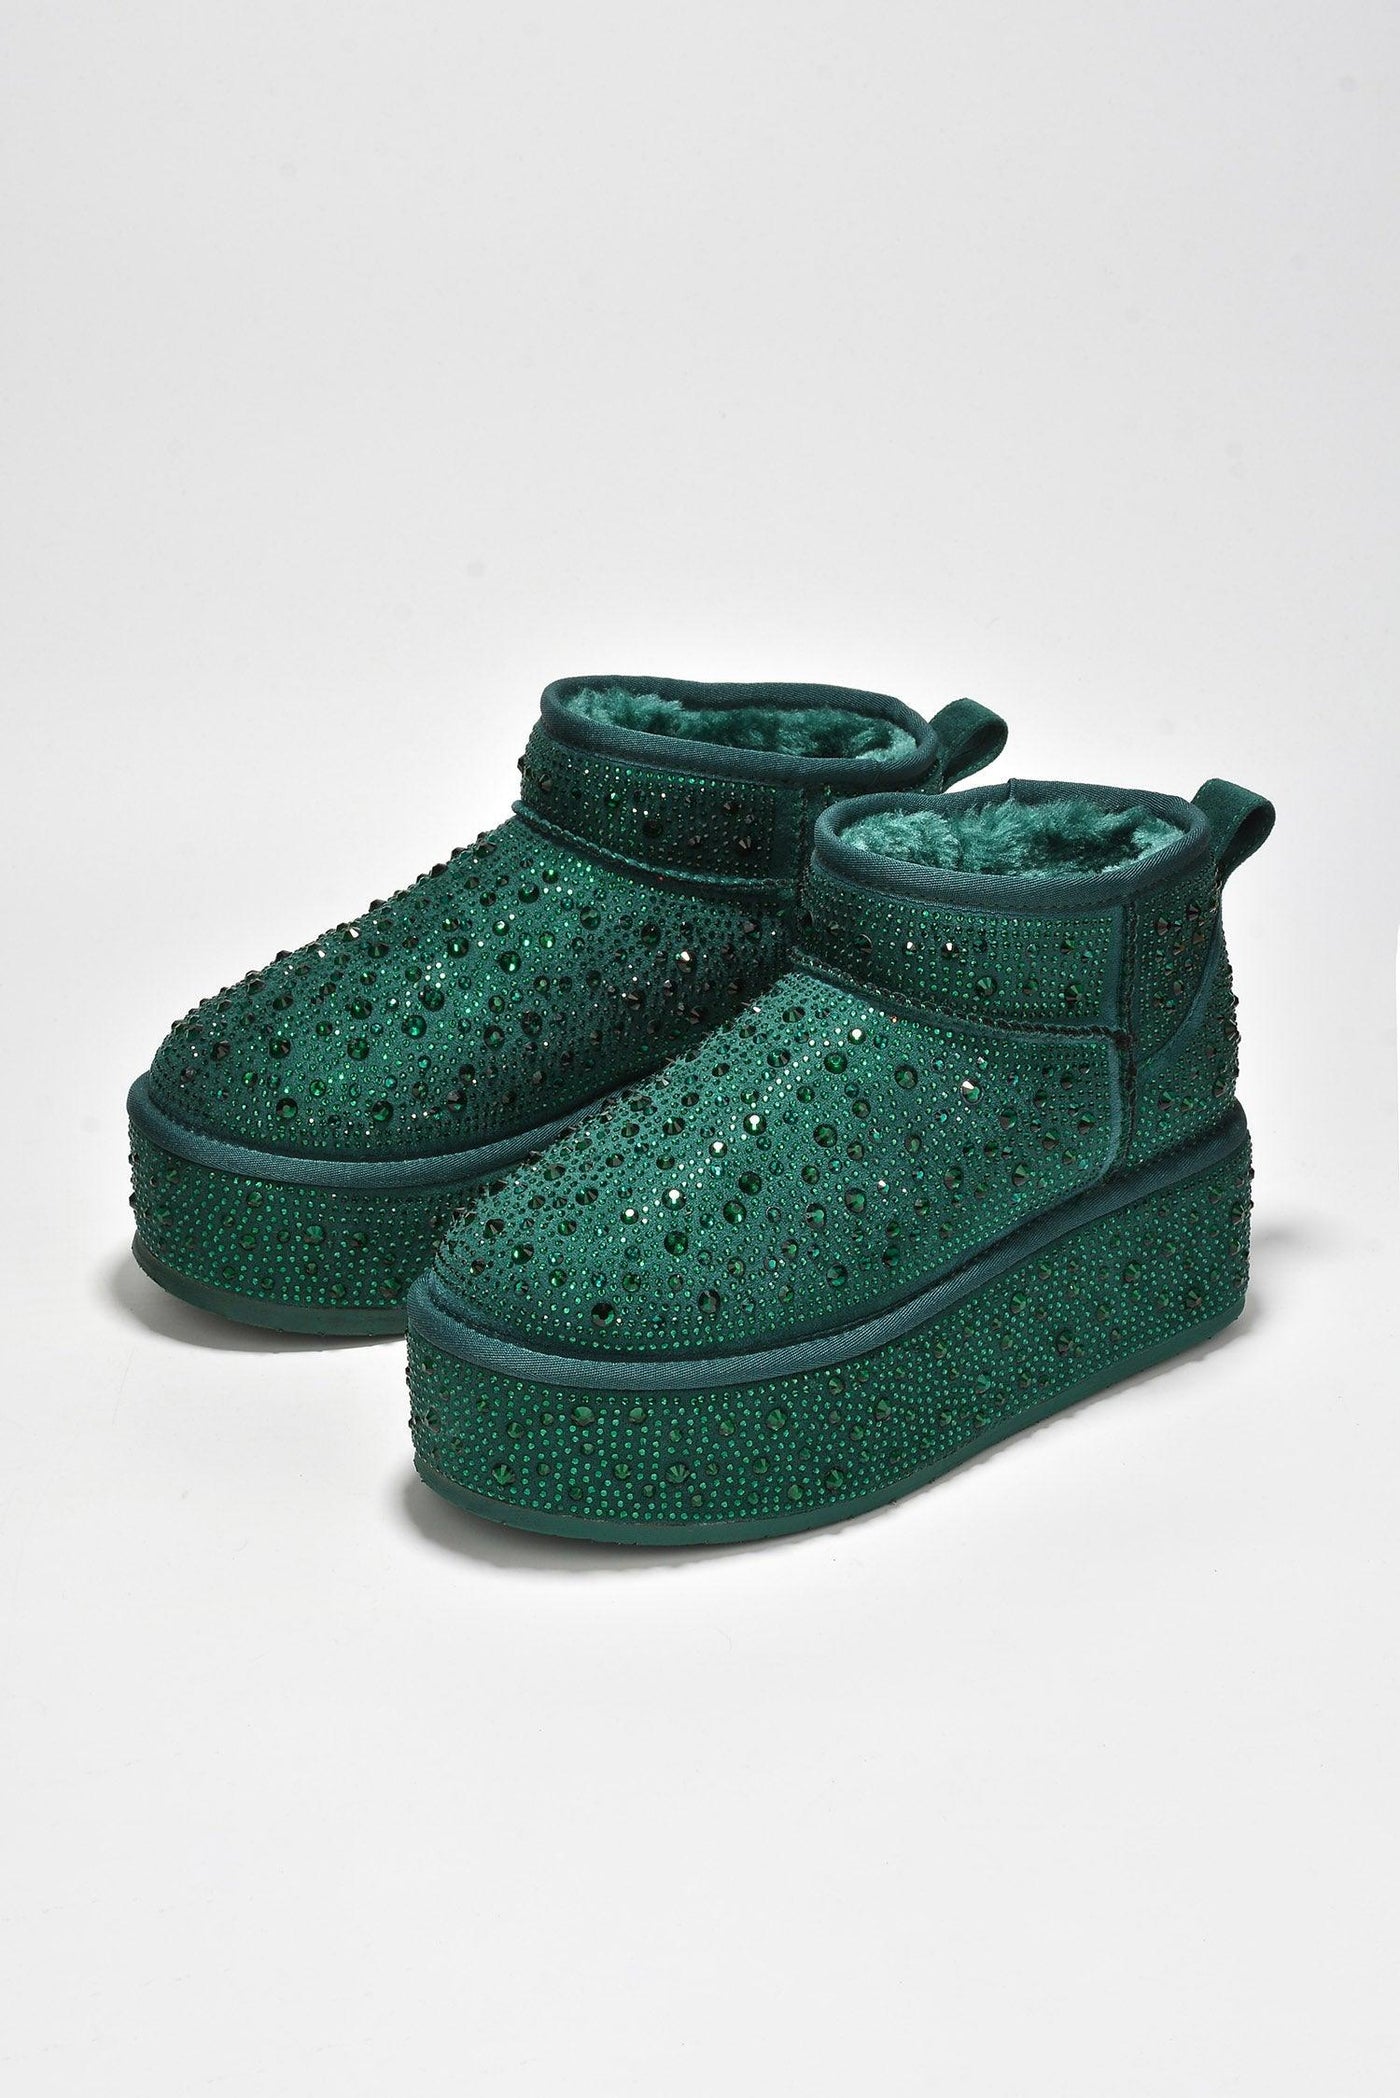 KYUMI - GREEN - AMIClubwear